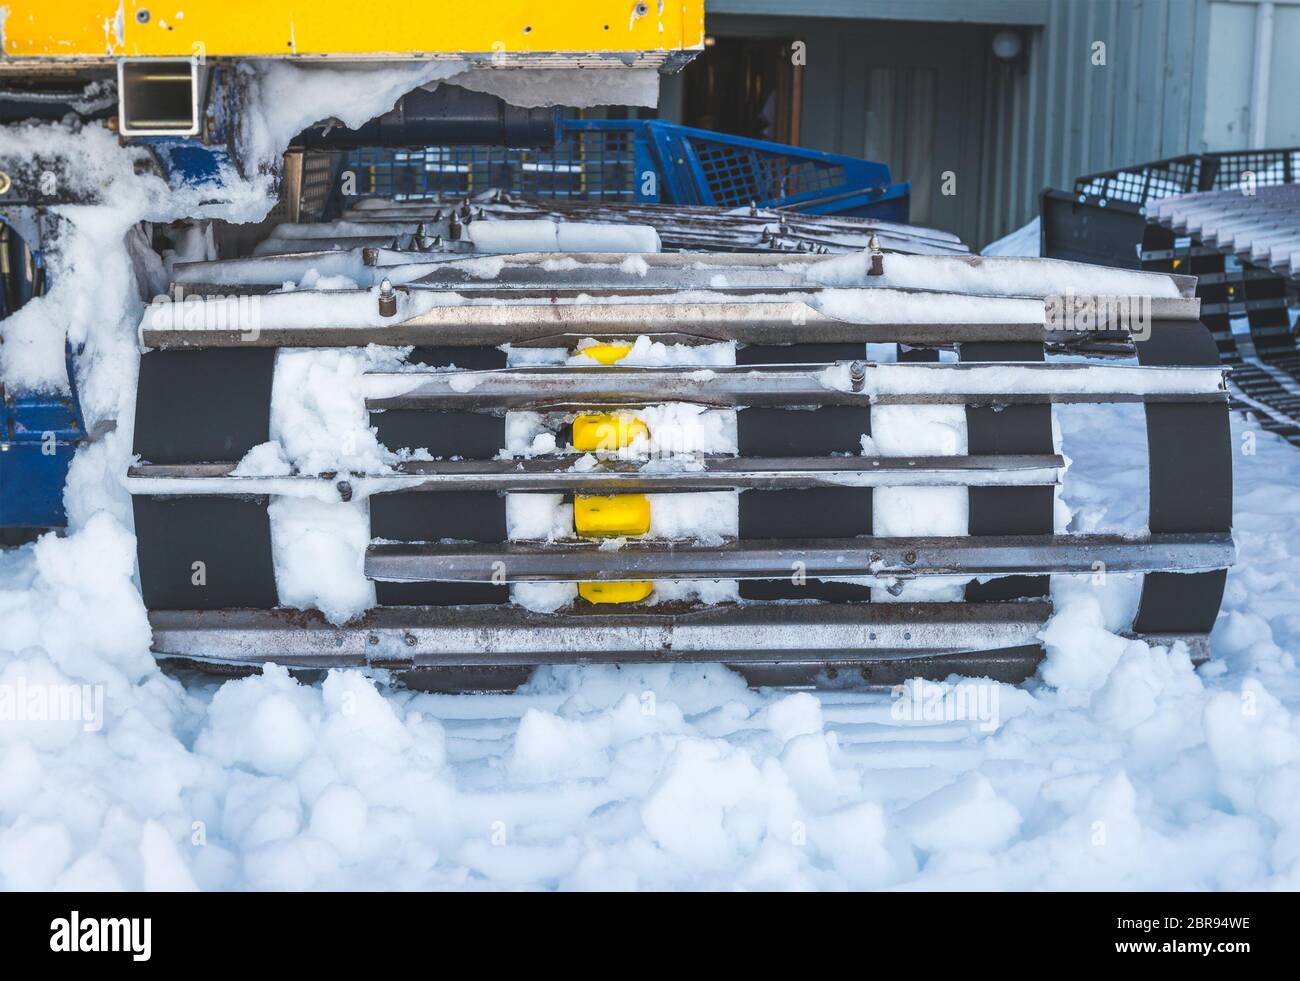 snow track vehicle Stock Photo